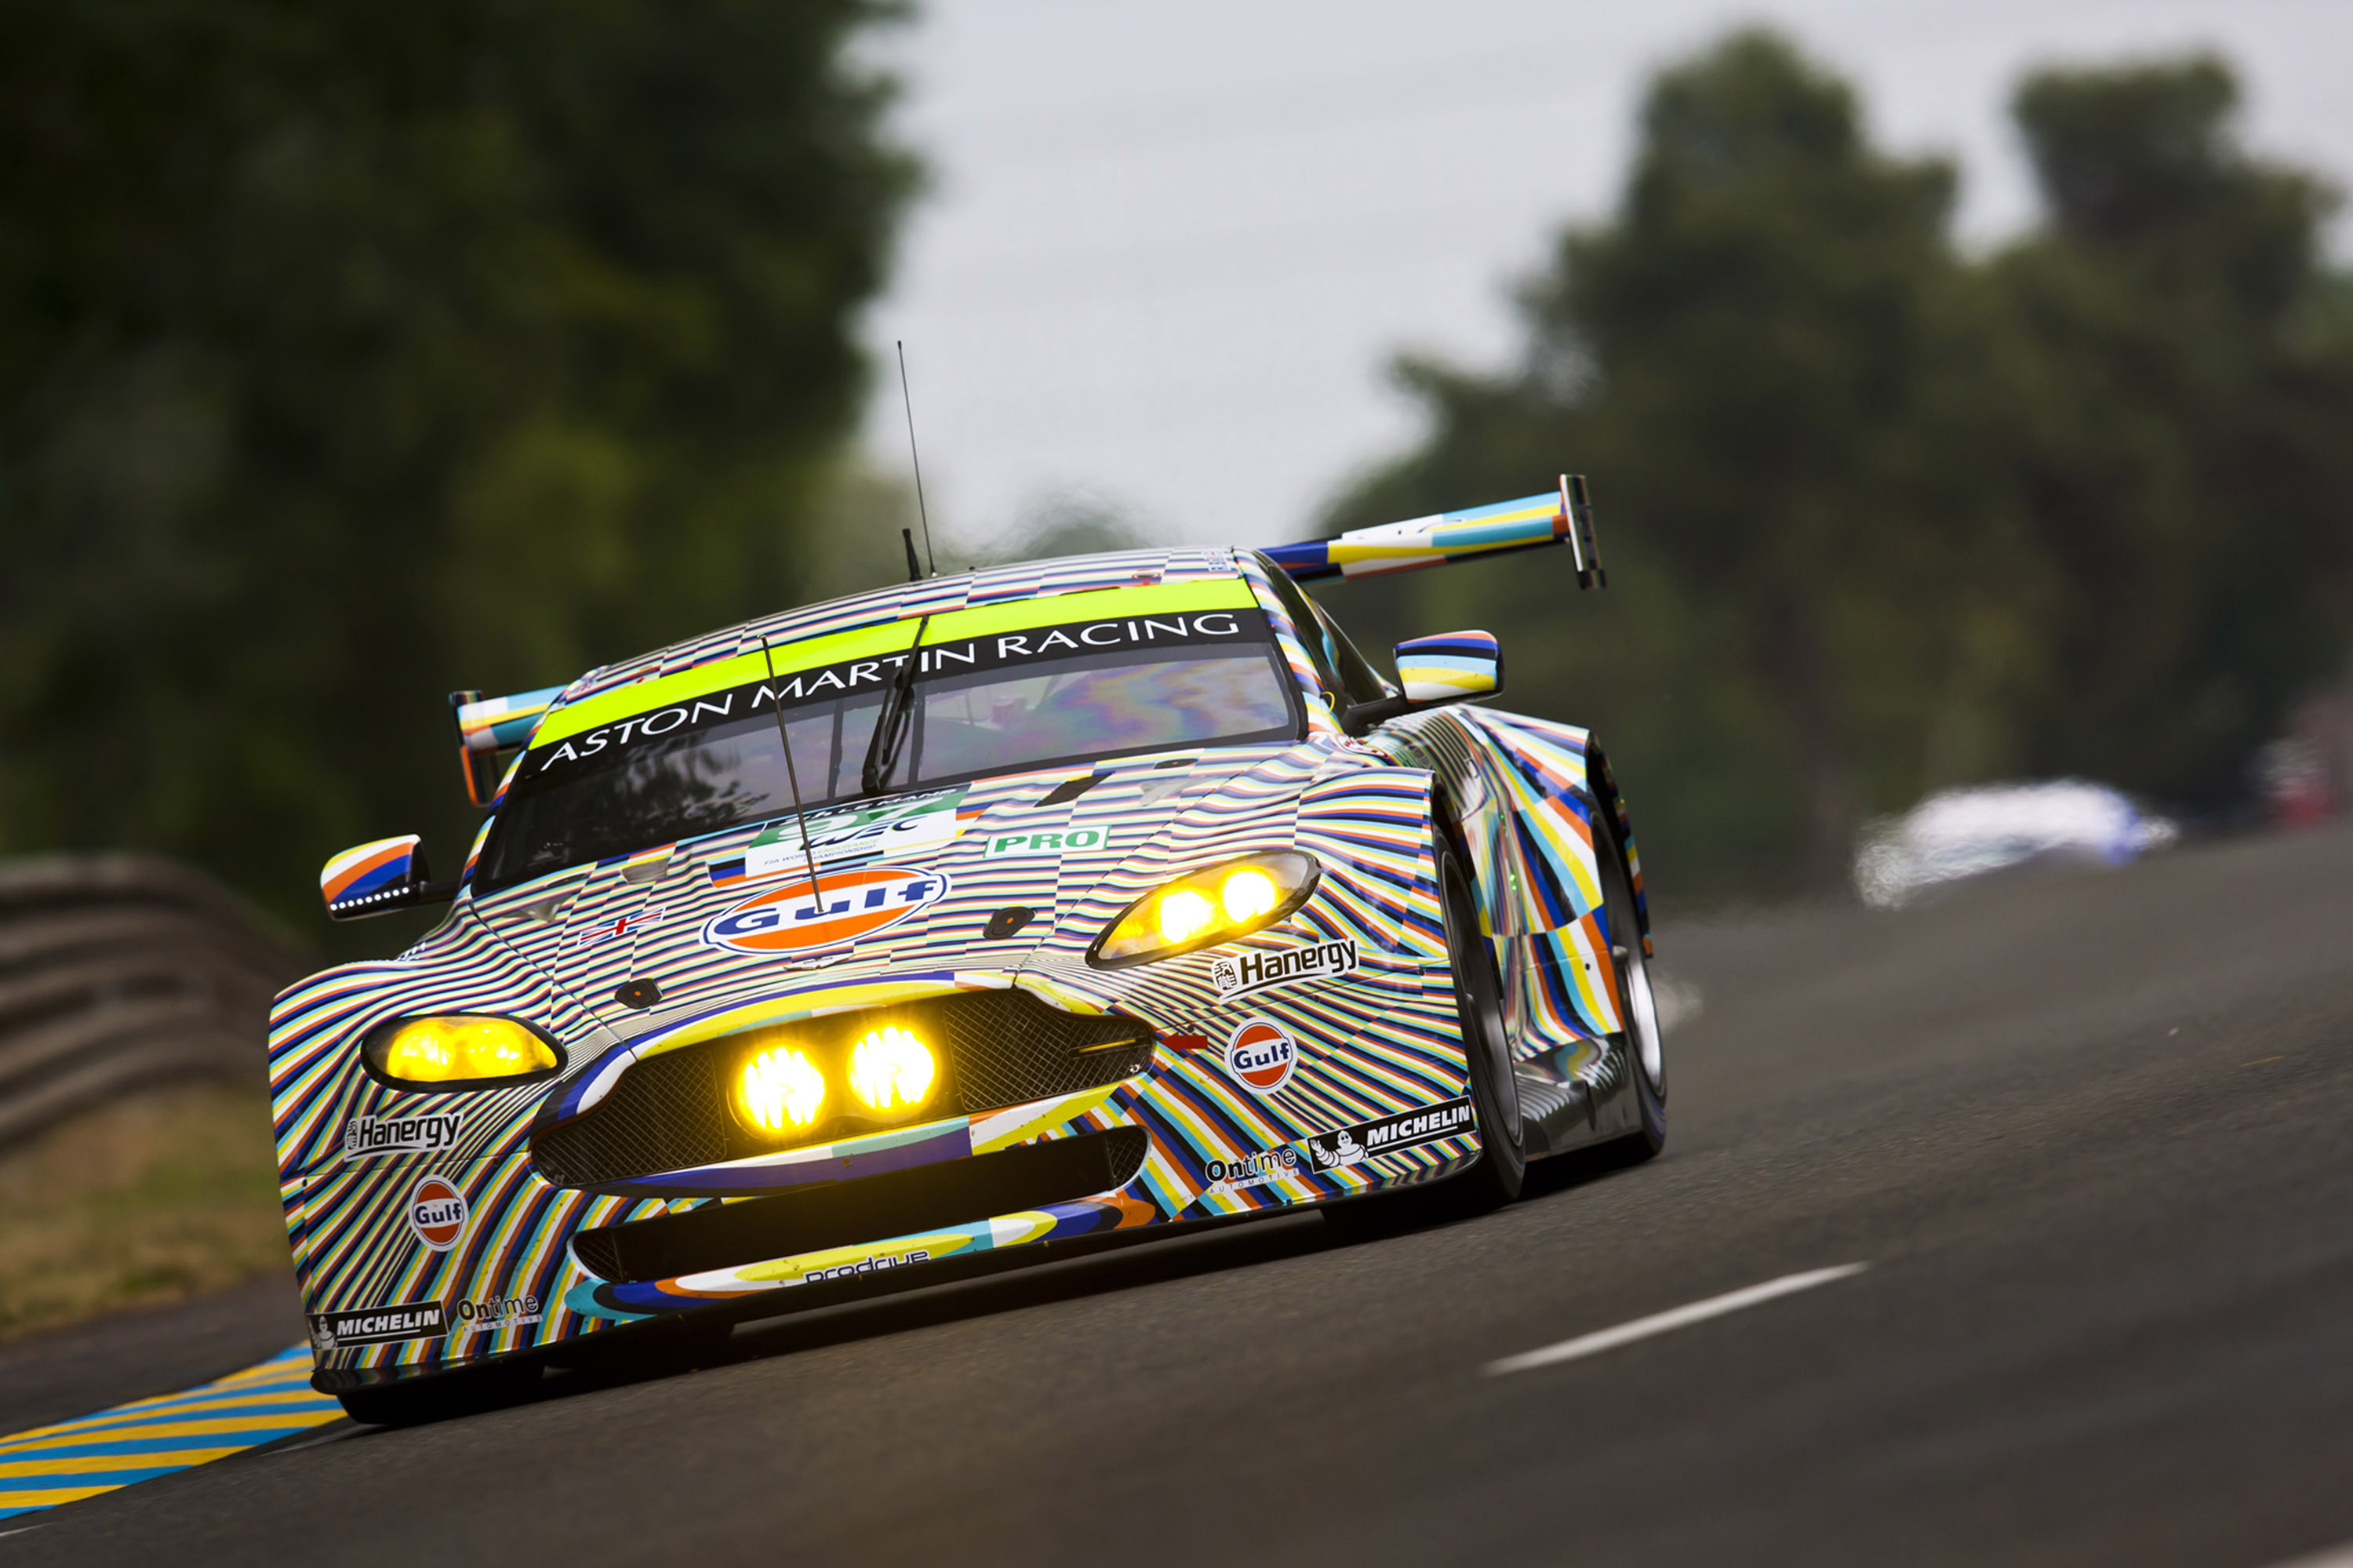 Aston Martin at Le Mans